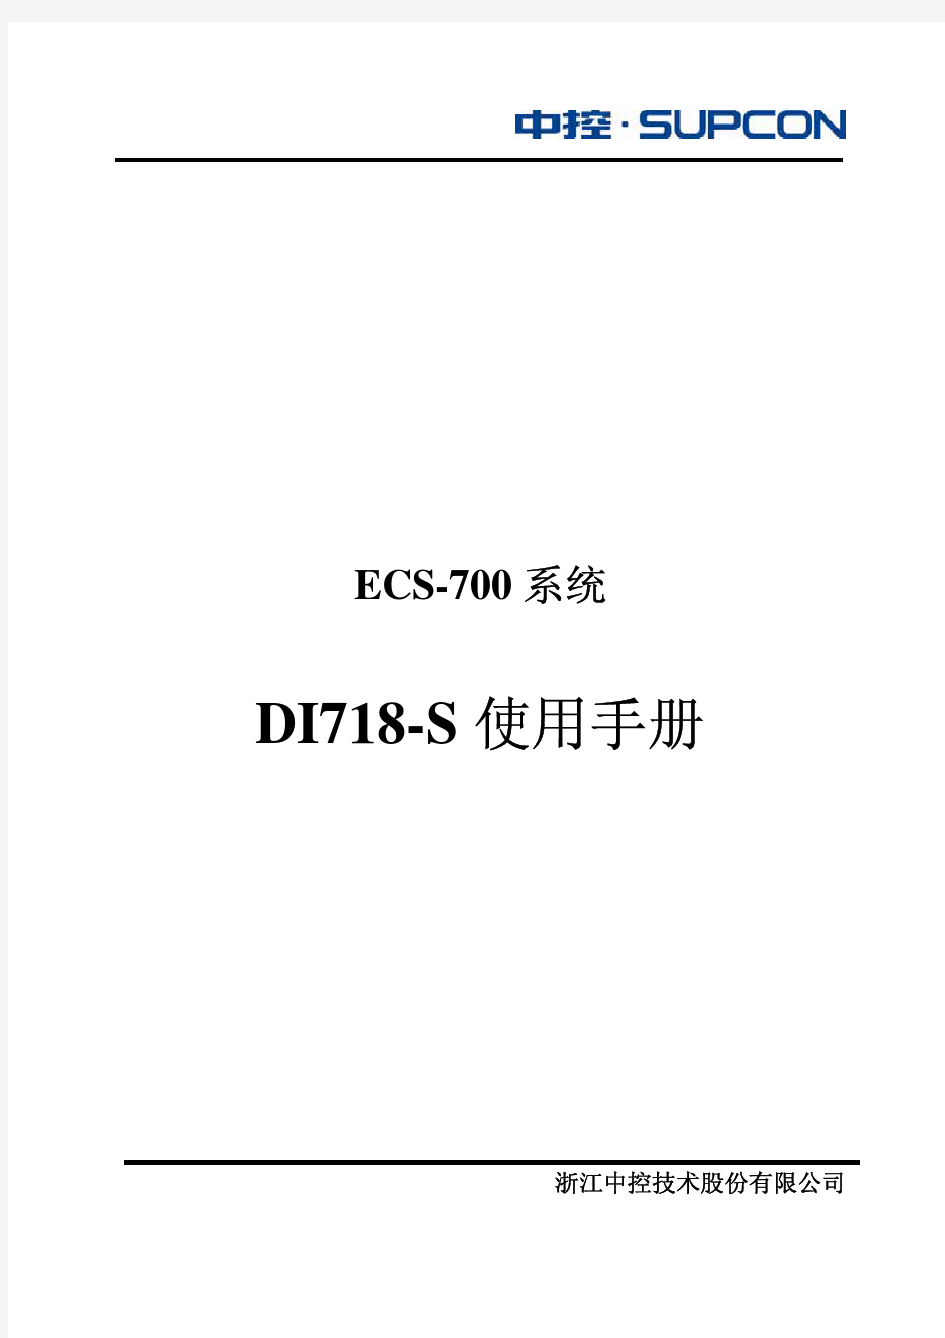 DI718-S使用手册